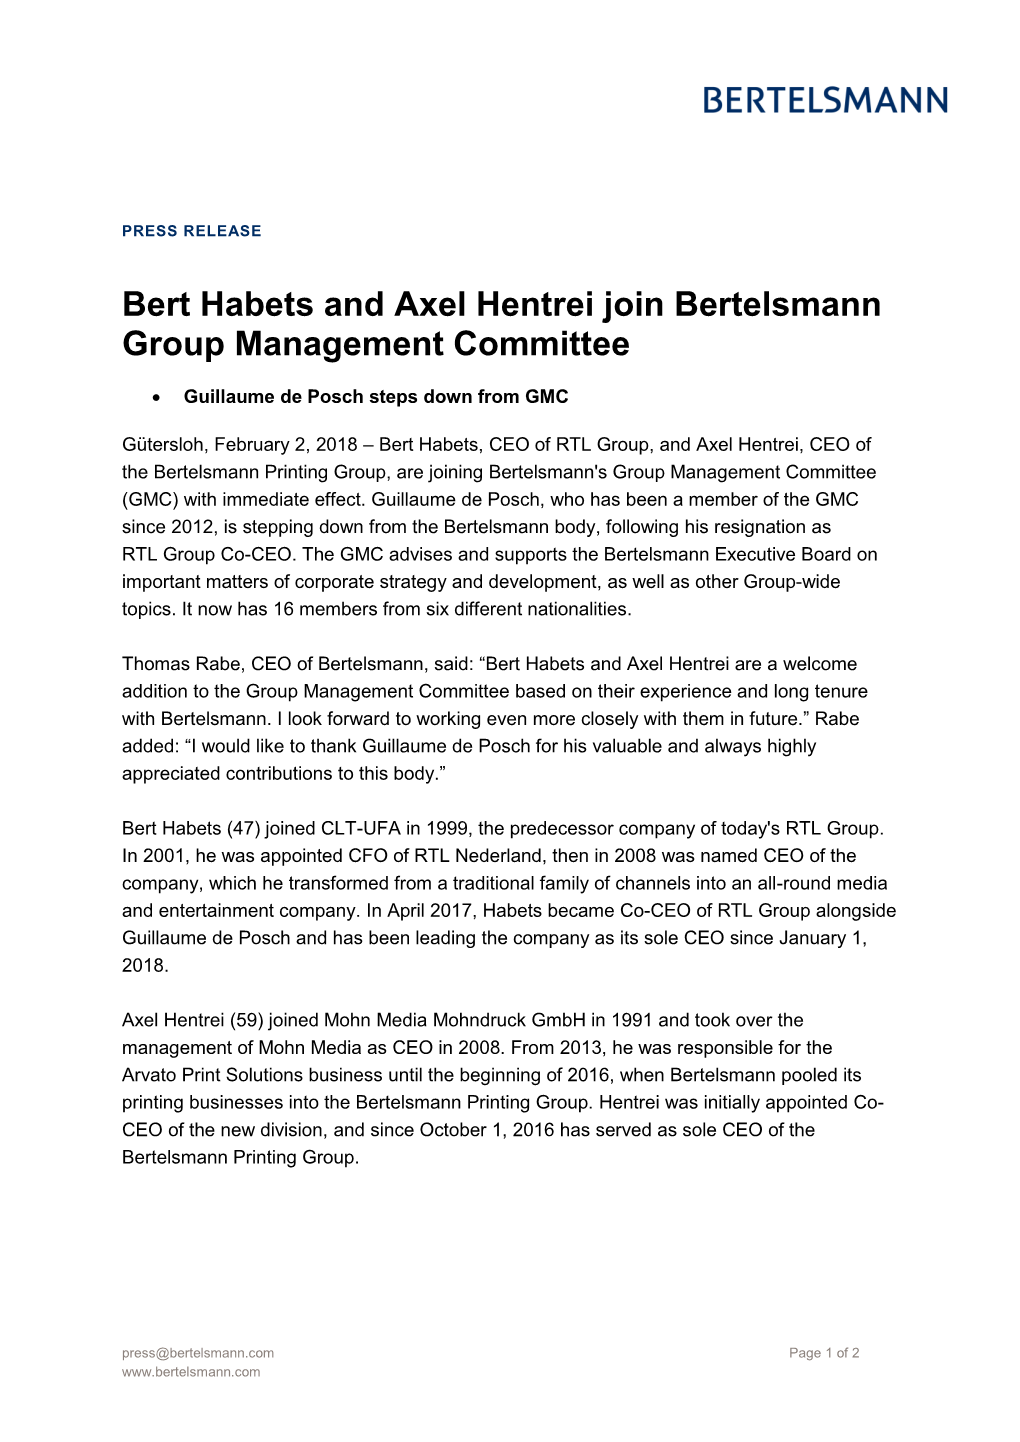 Bert Habets and Axel Hentrei Join Bertelsmann Group Management Committee